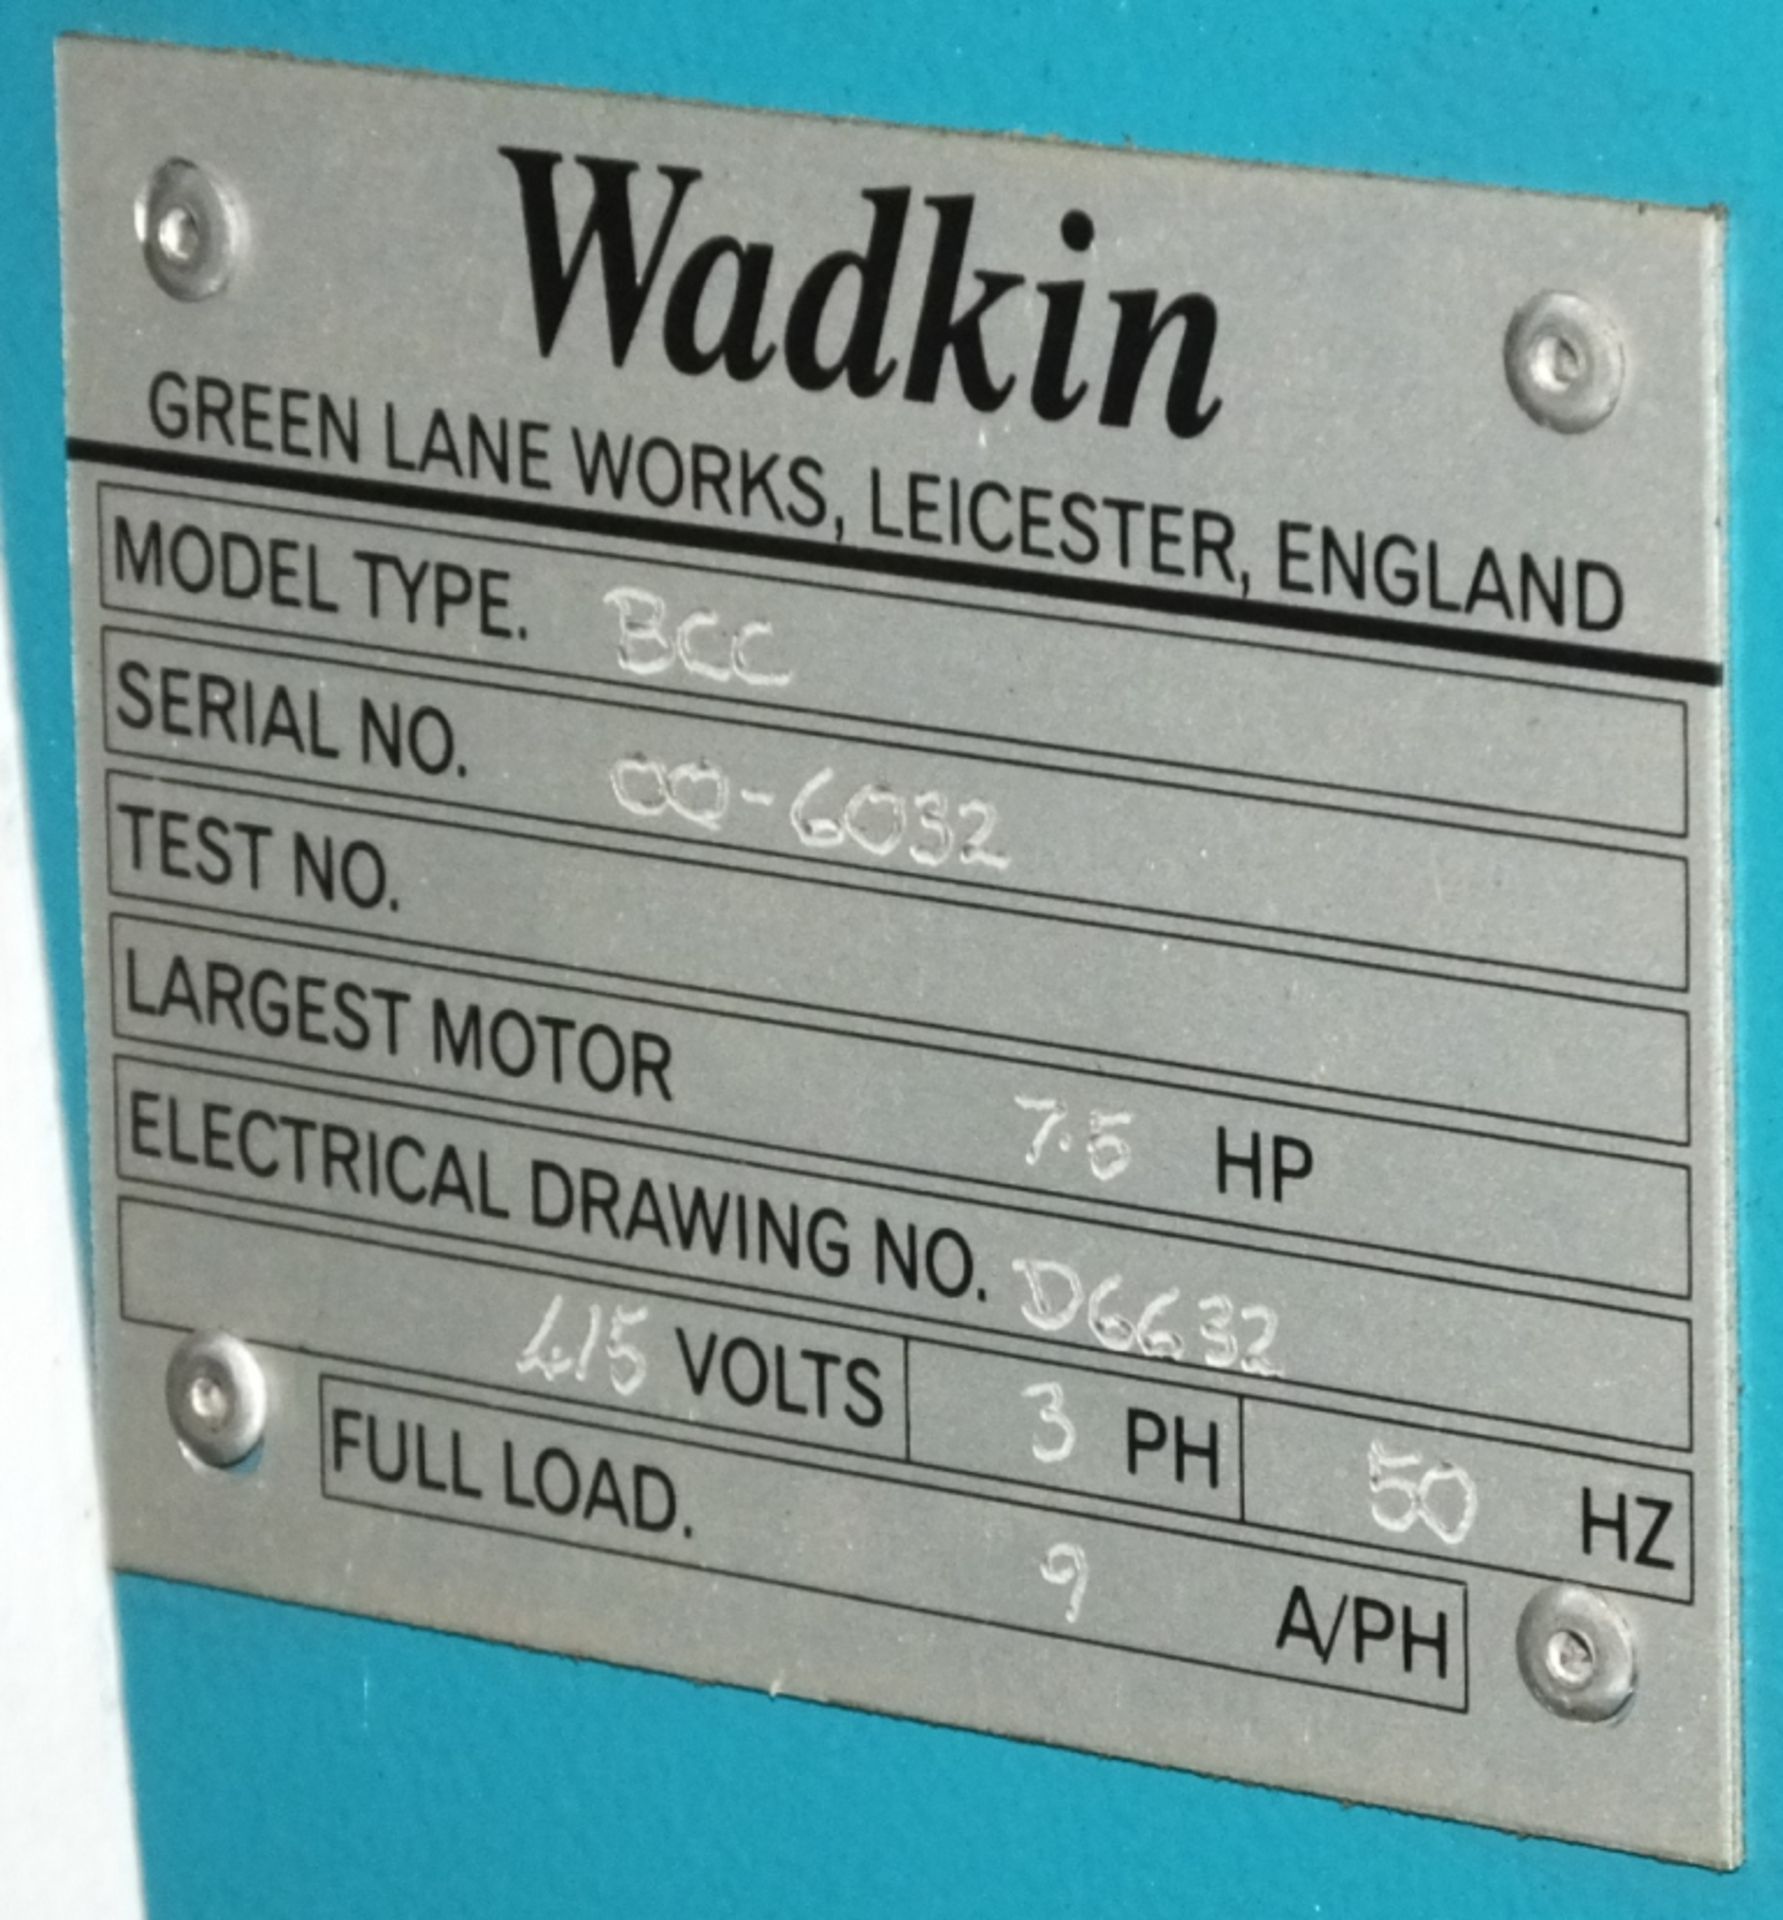 Wadkin Spindle Moulder BCC - Image 5 of 9